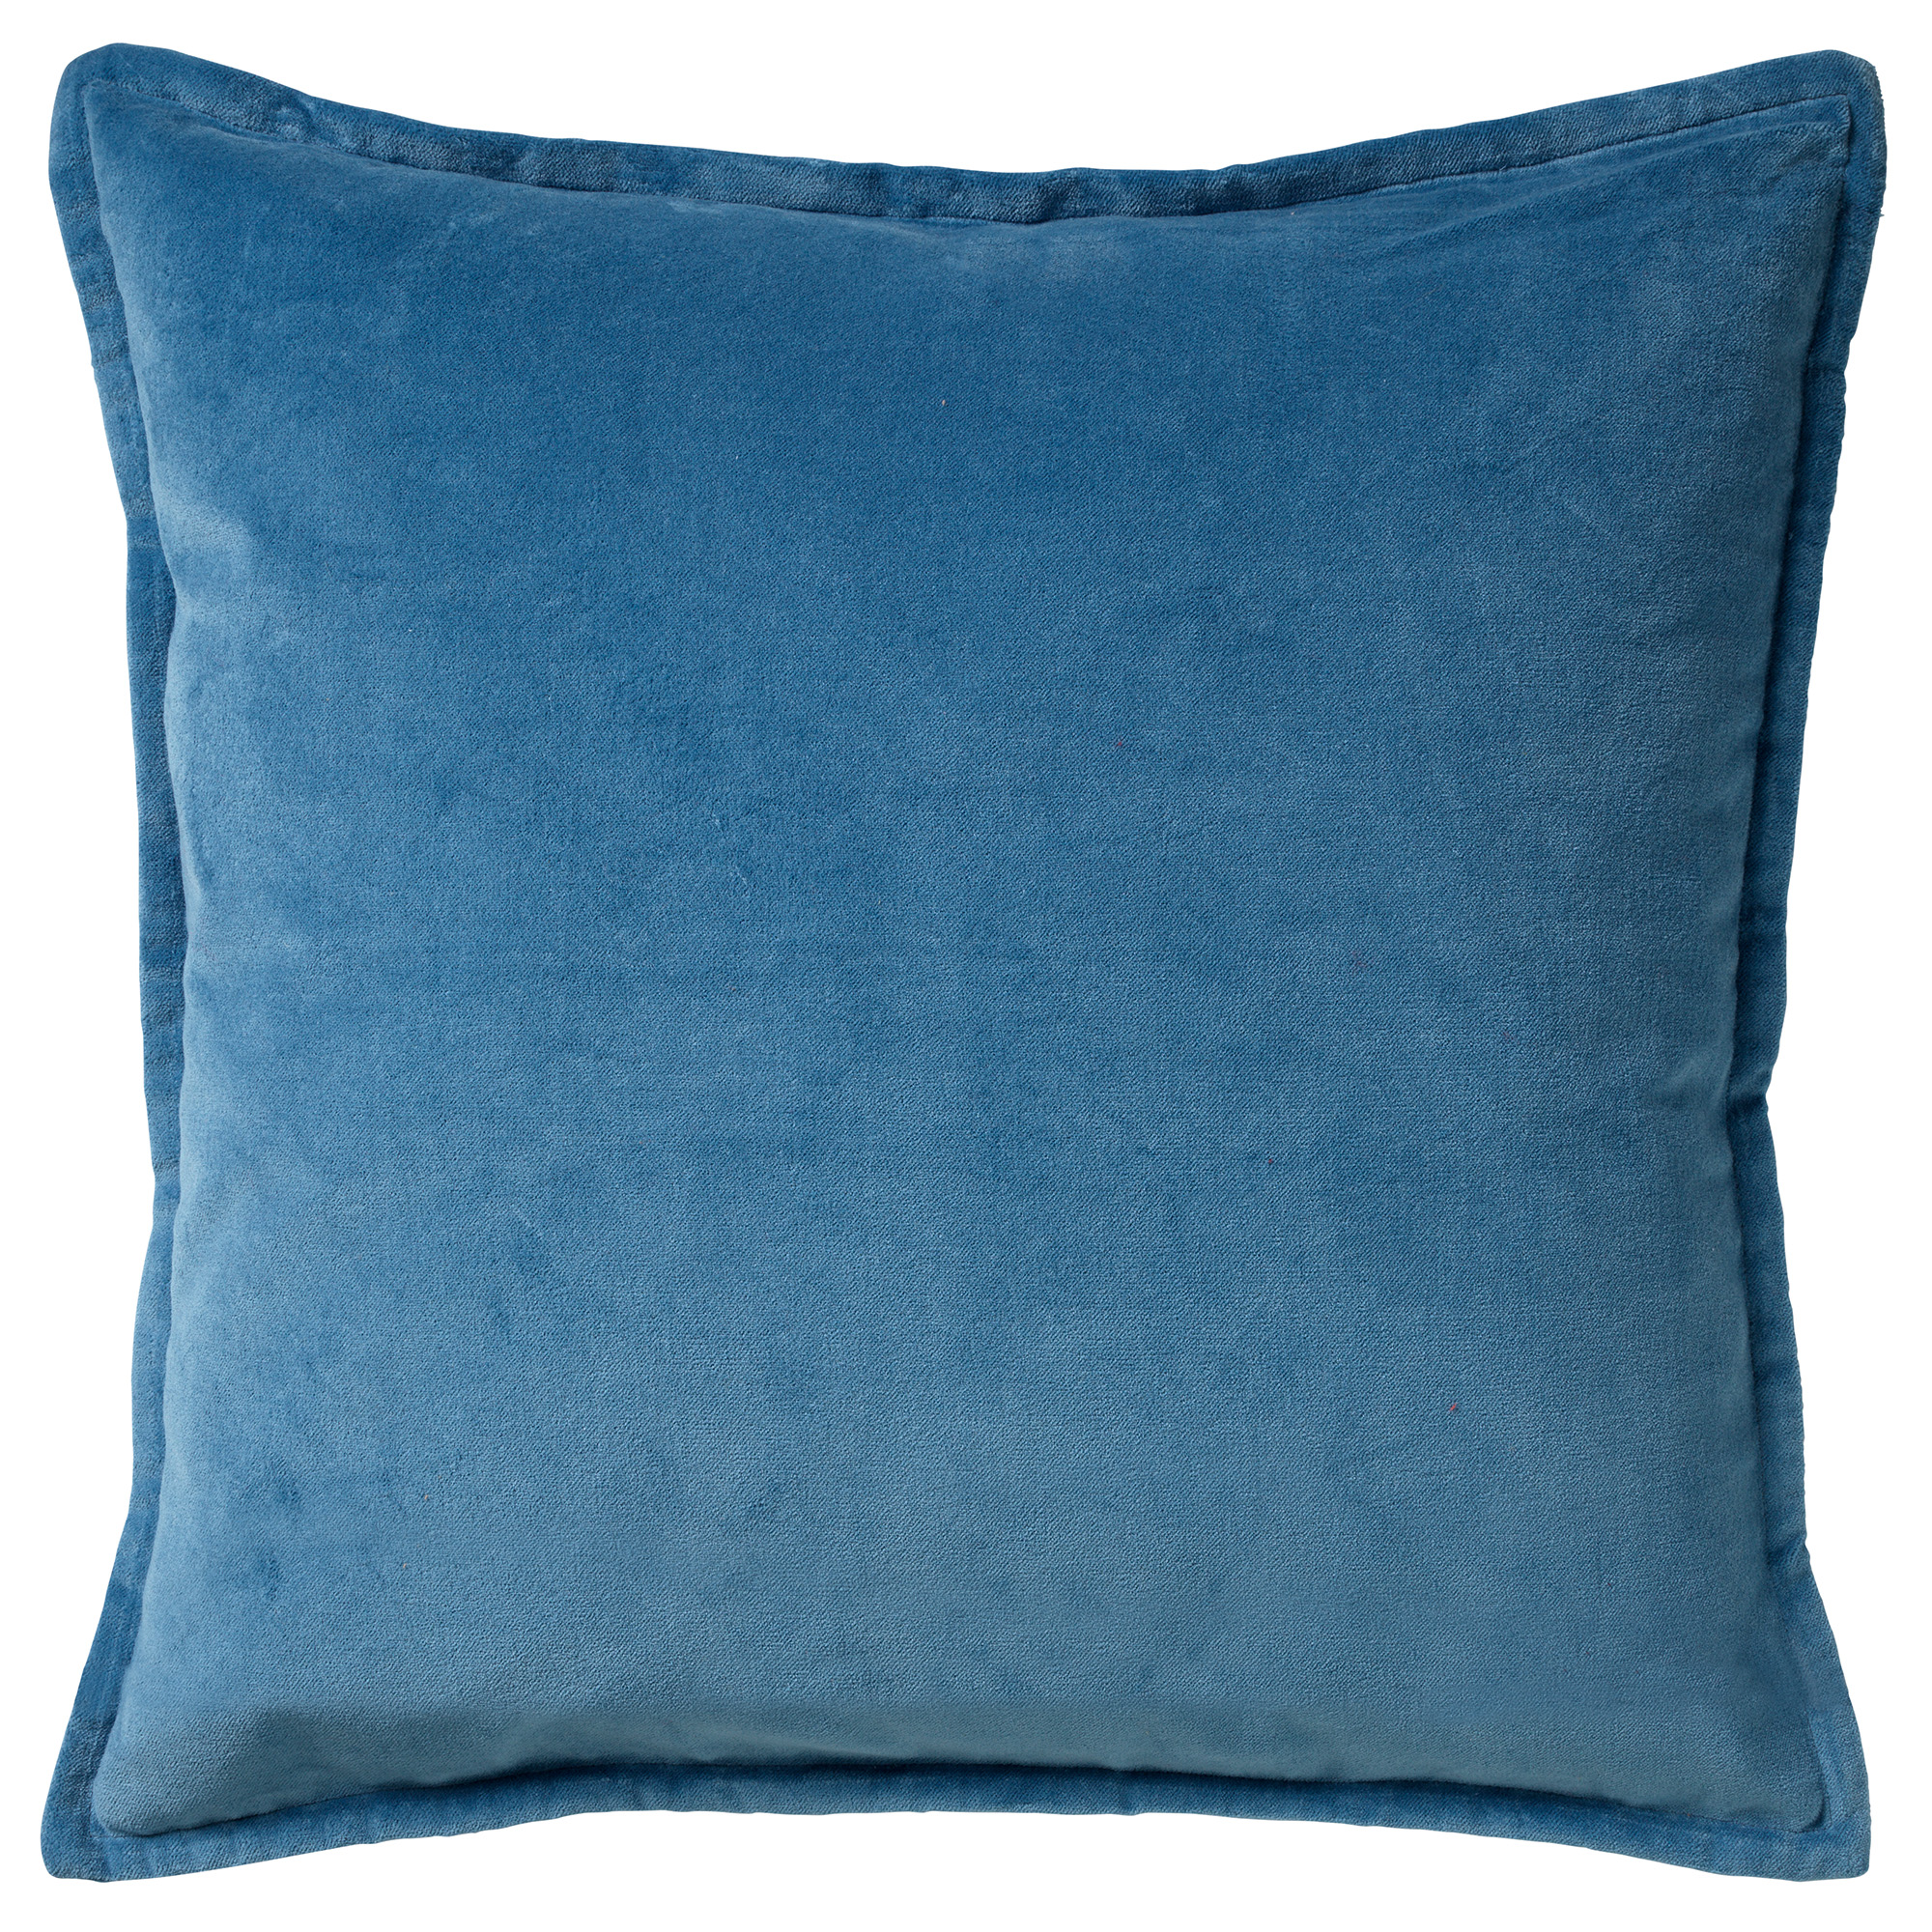 CAITH - Sierkussen velvet Provincial Blue 50x50 cm - blauw